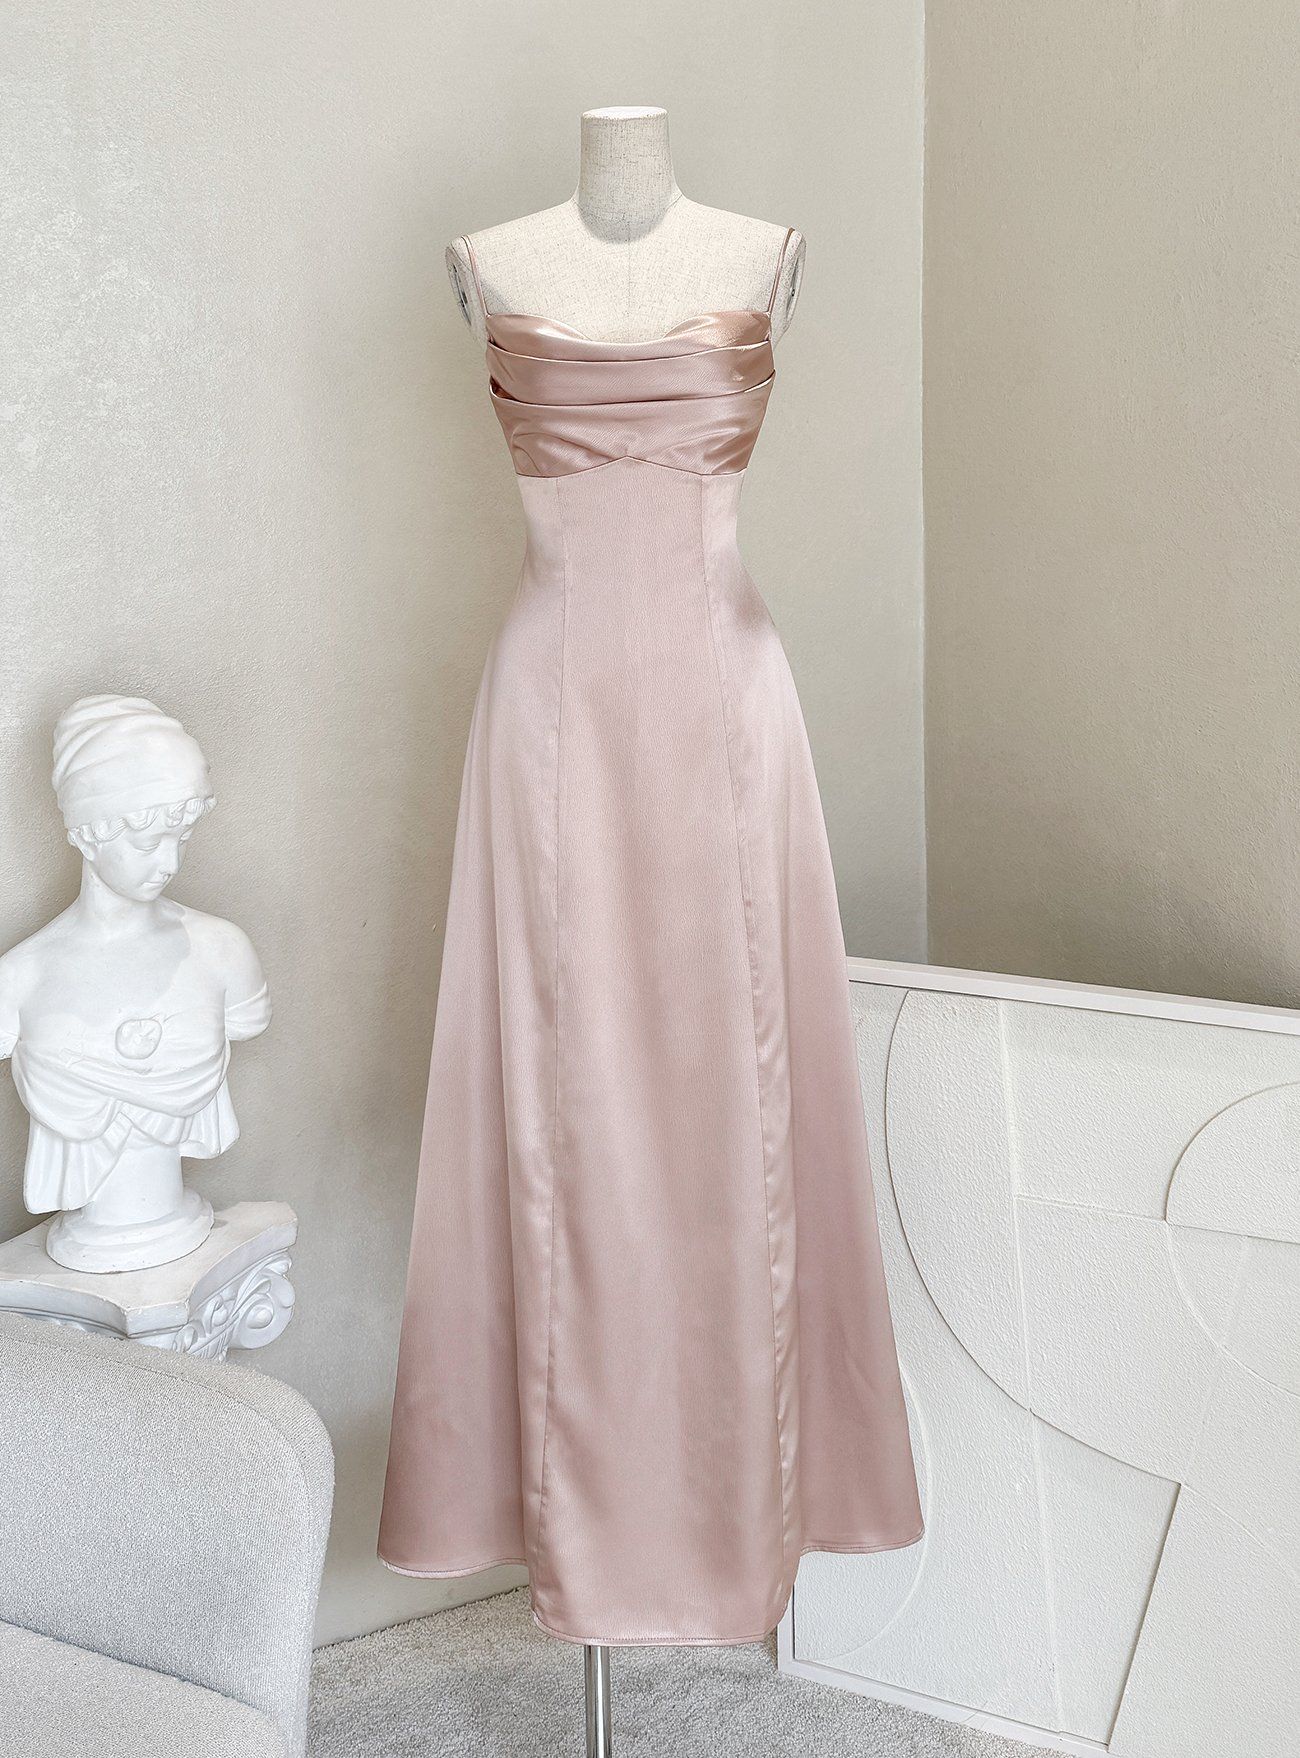 Mới) Mã H8365 Giá 3280K: Váy Đầm Liền Thân Dáng Dài Nữ Shtdge Cổ Chữ V Thời  Trang Nữ Đồ Đi Biển Váy Maxi Chất Liệu Lụa Tơ Tằm G06 Sản Phẩm